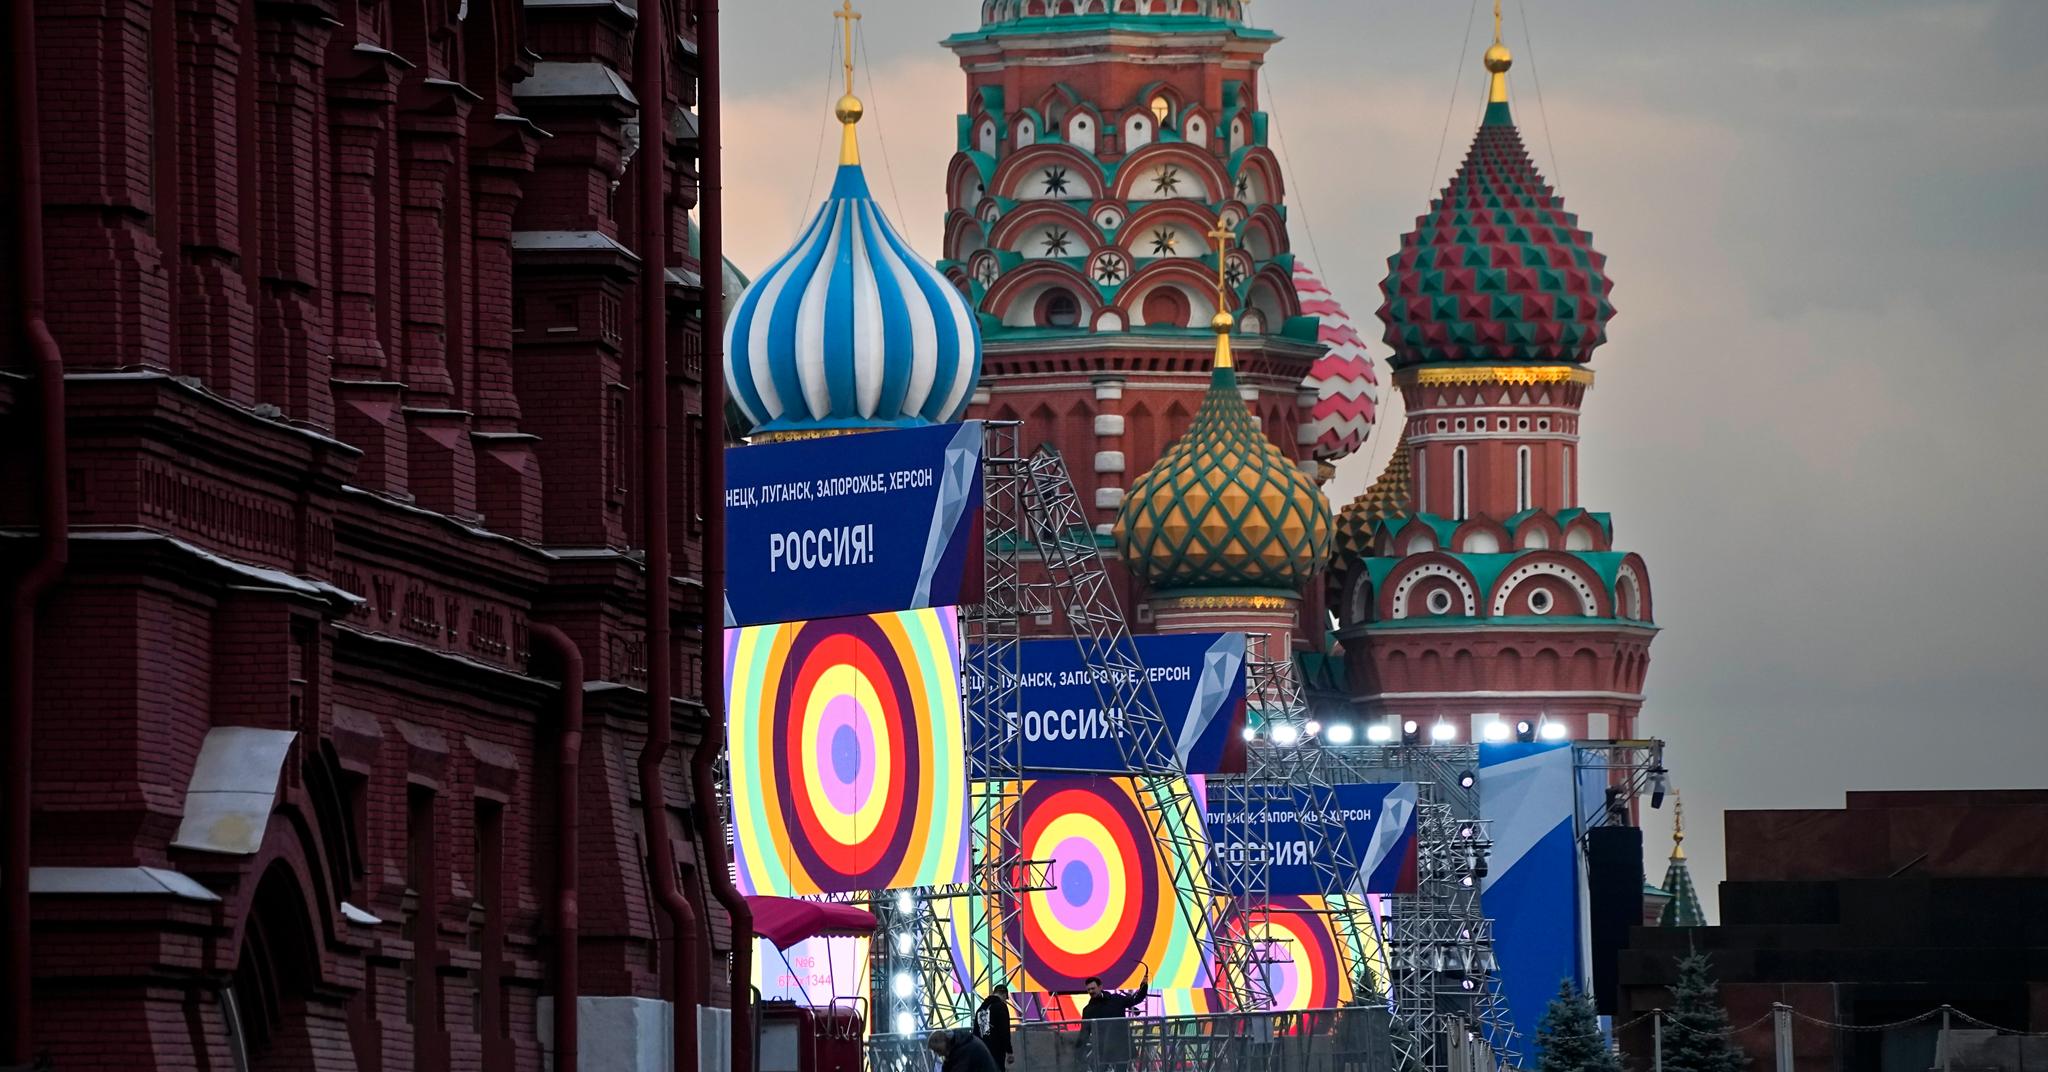 Den røde plass er rigget til konsert og taler fredag. Da skal det feires at Russland i strid med folkeretten har innlemmet deler av Ukraina i Russland. 